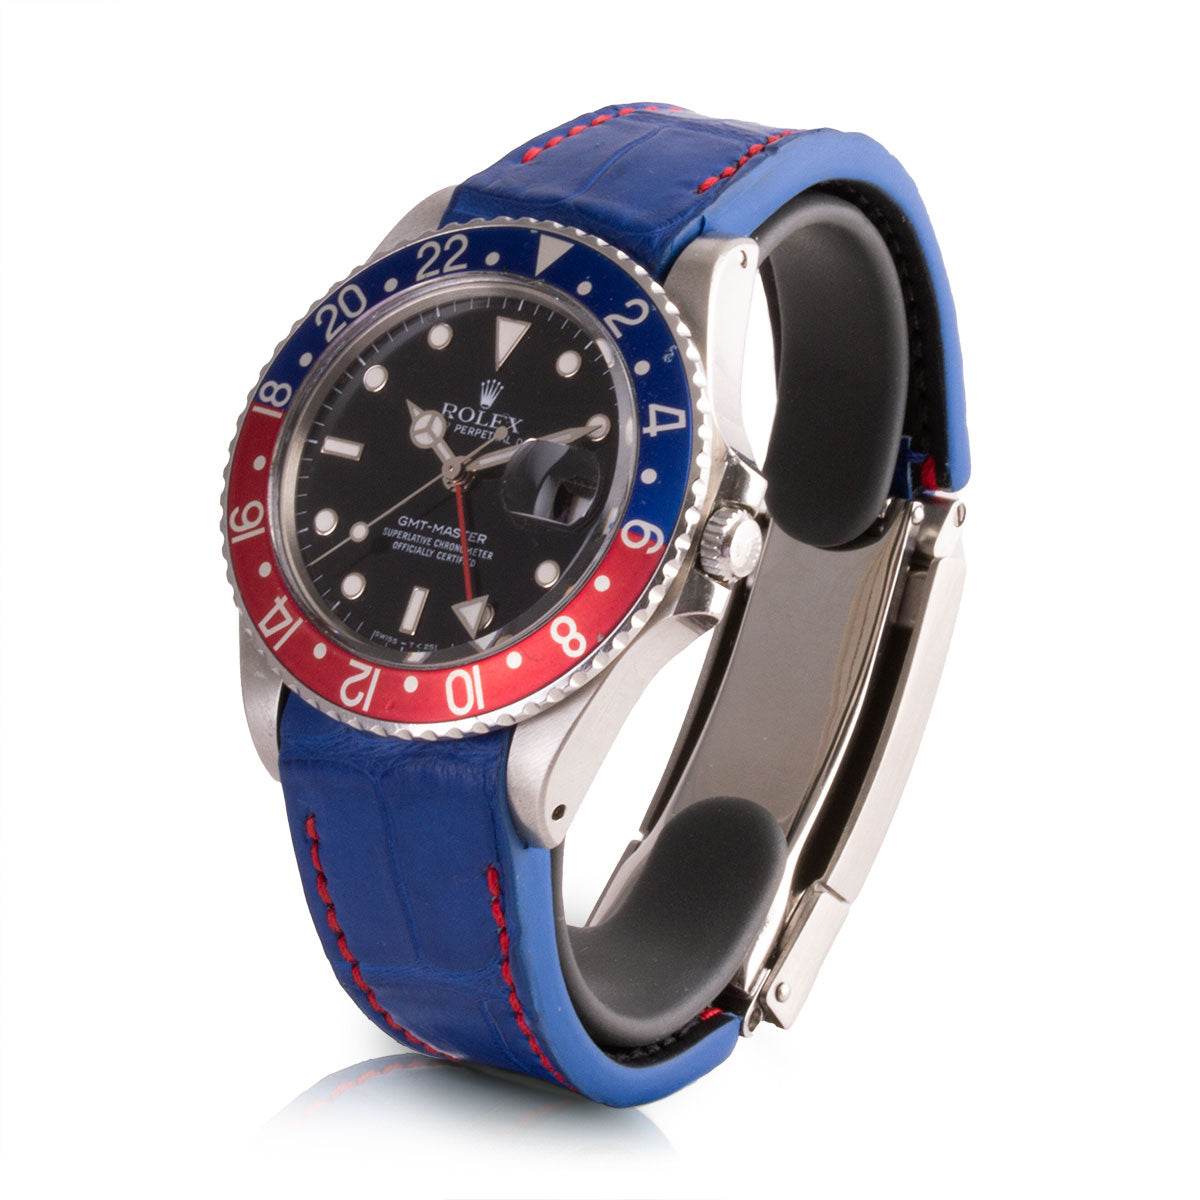 Second-hand watch - Rolex - GMT Master 16750 "Pepsi" - 14500€